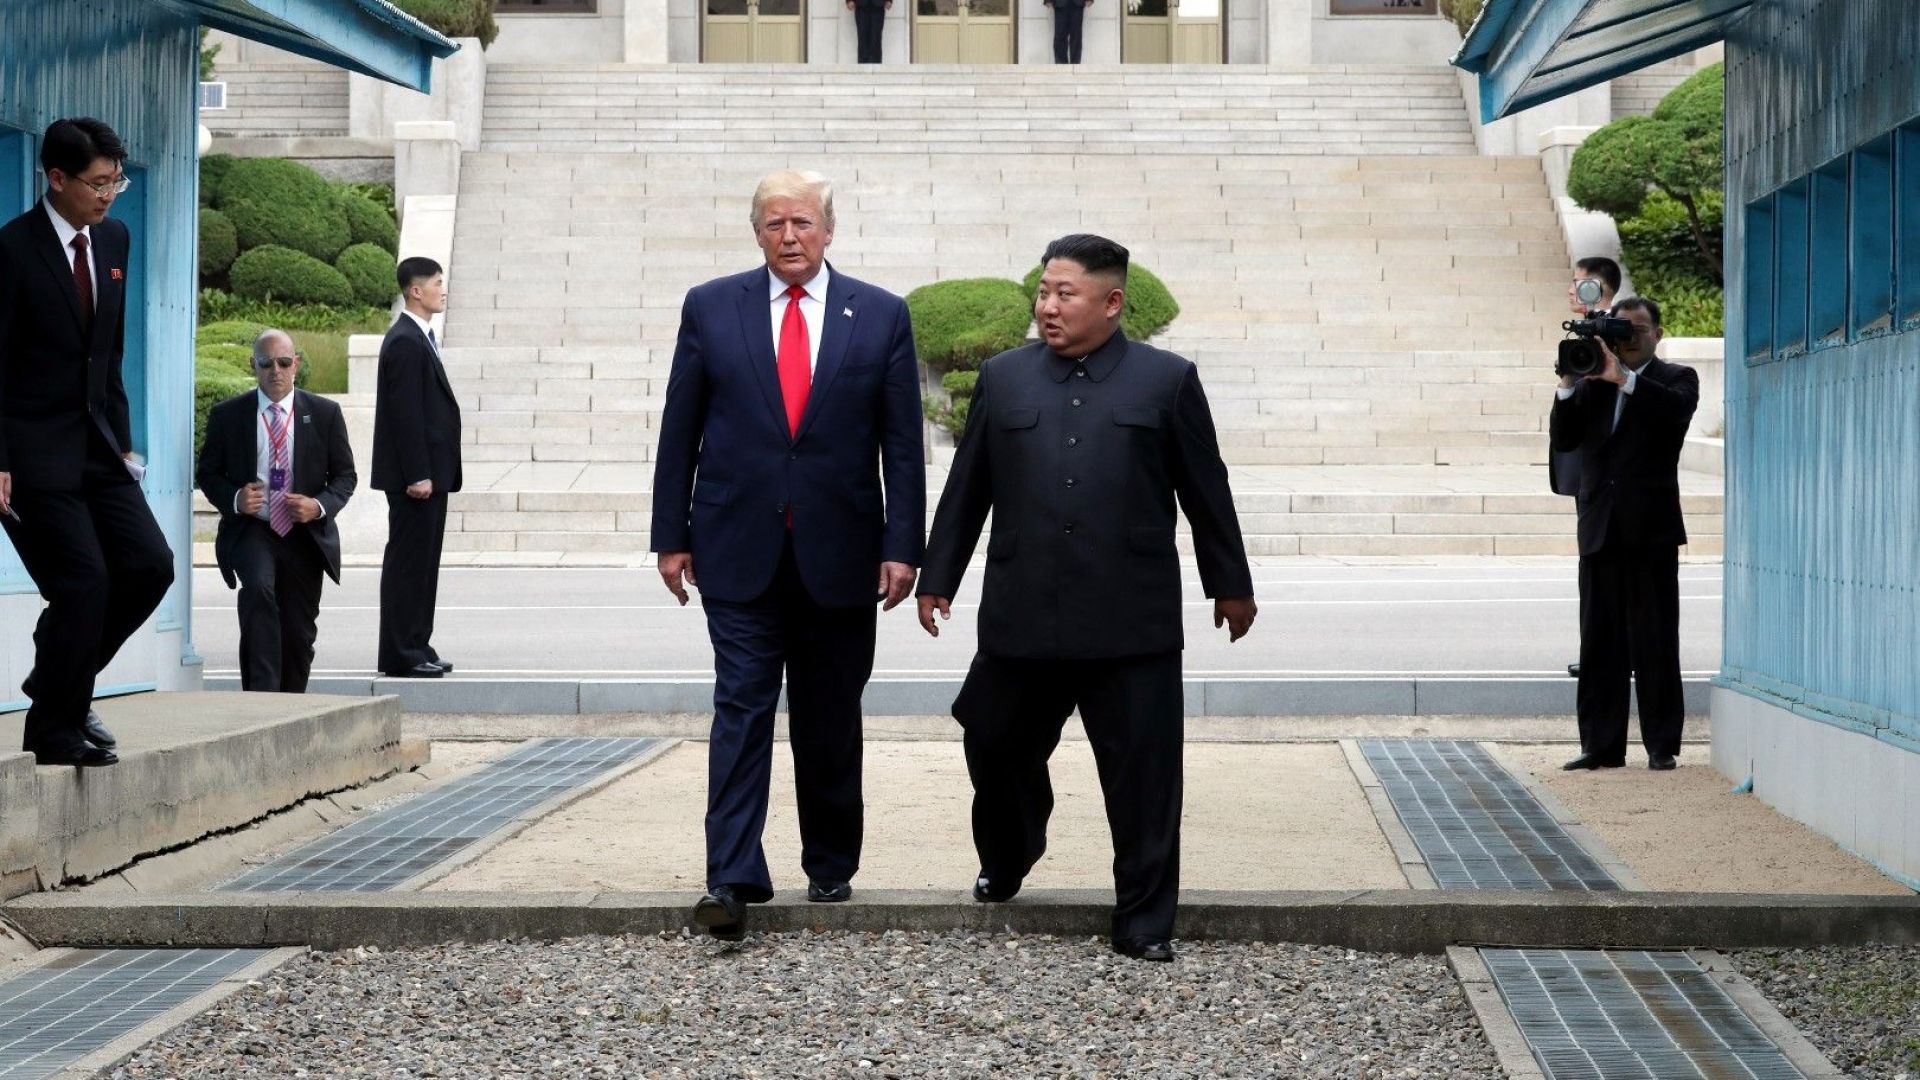 Северна Корея окачестви вчерашната среща между своя лидер Ким Чен-ун